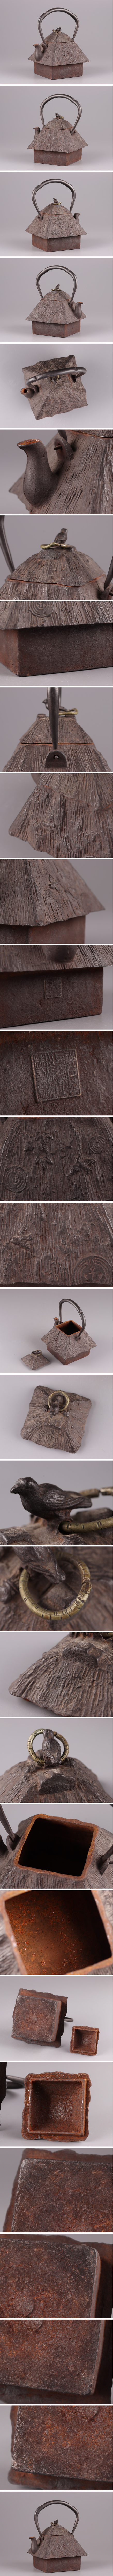 購入特典煎茶道具 時代鉄瓶 葛谷形 胴在印 時代物 極上品 初だし品 4188 鉄瓶